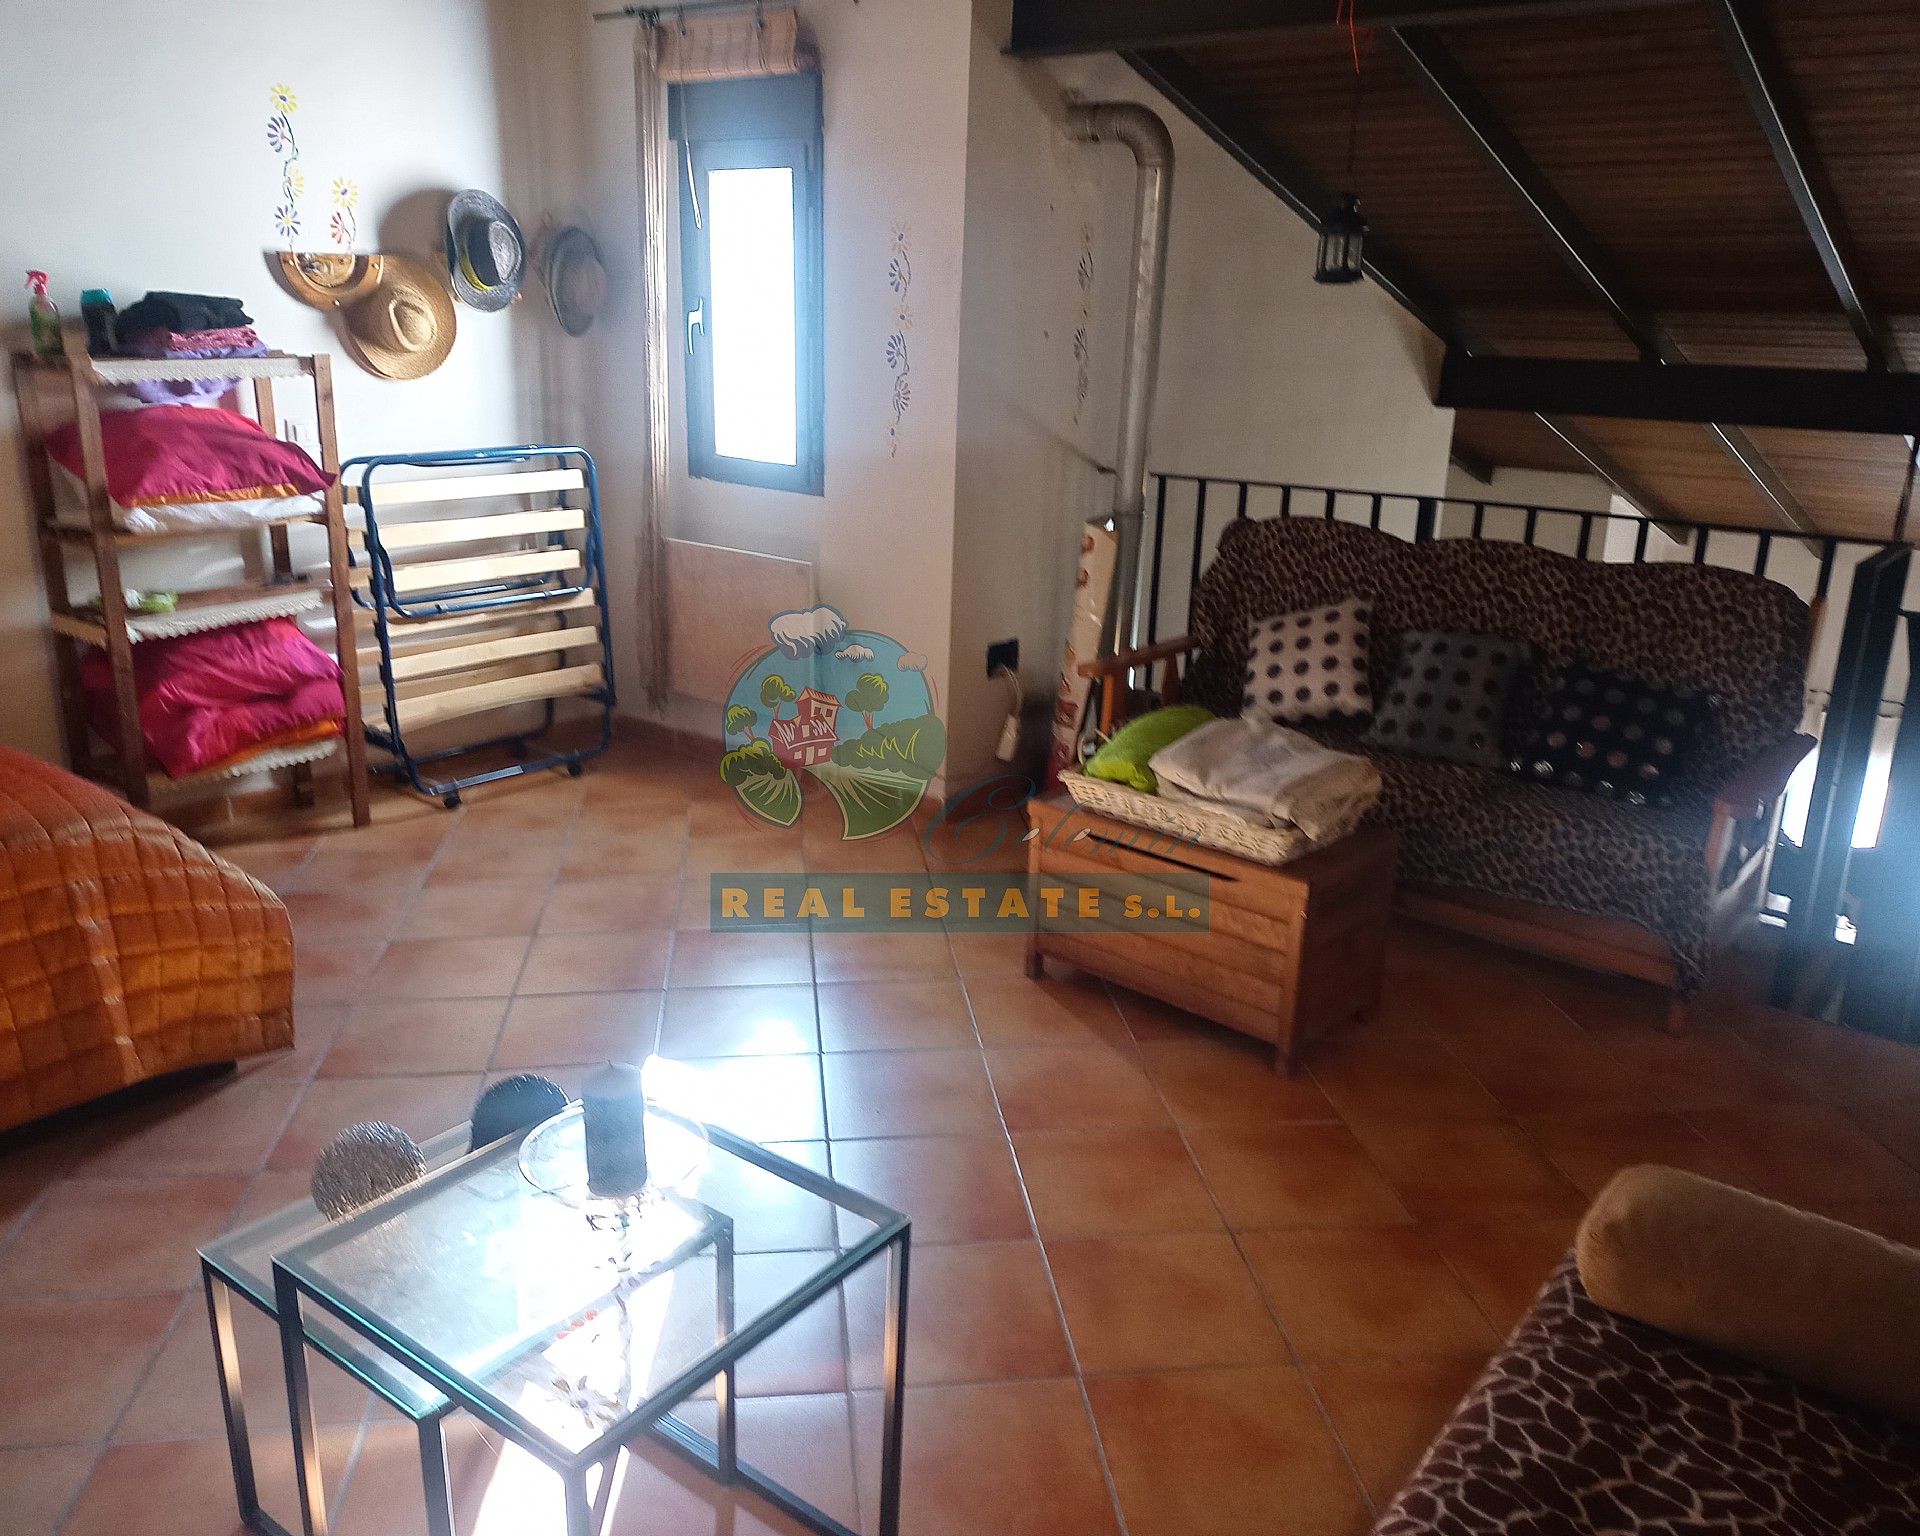 3 bedroom in Navarredonda de Gredos.